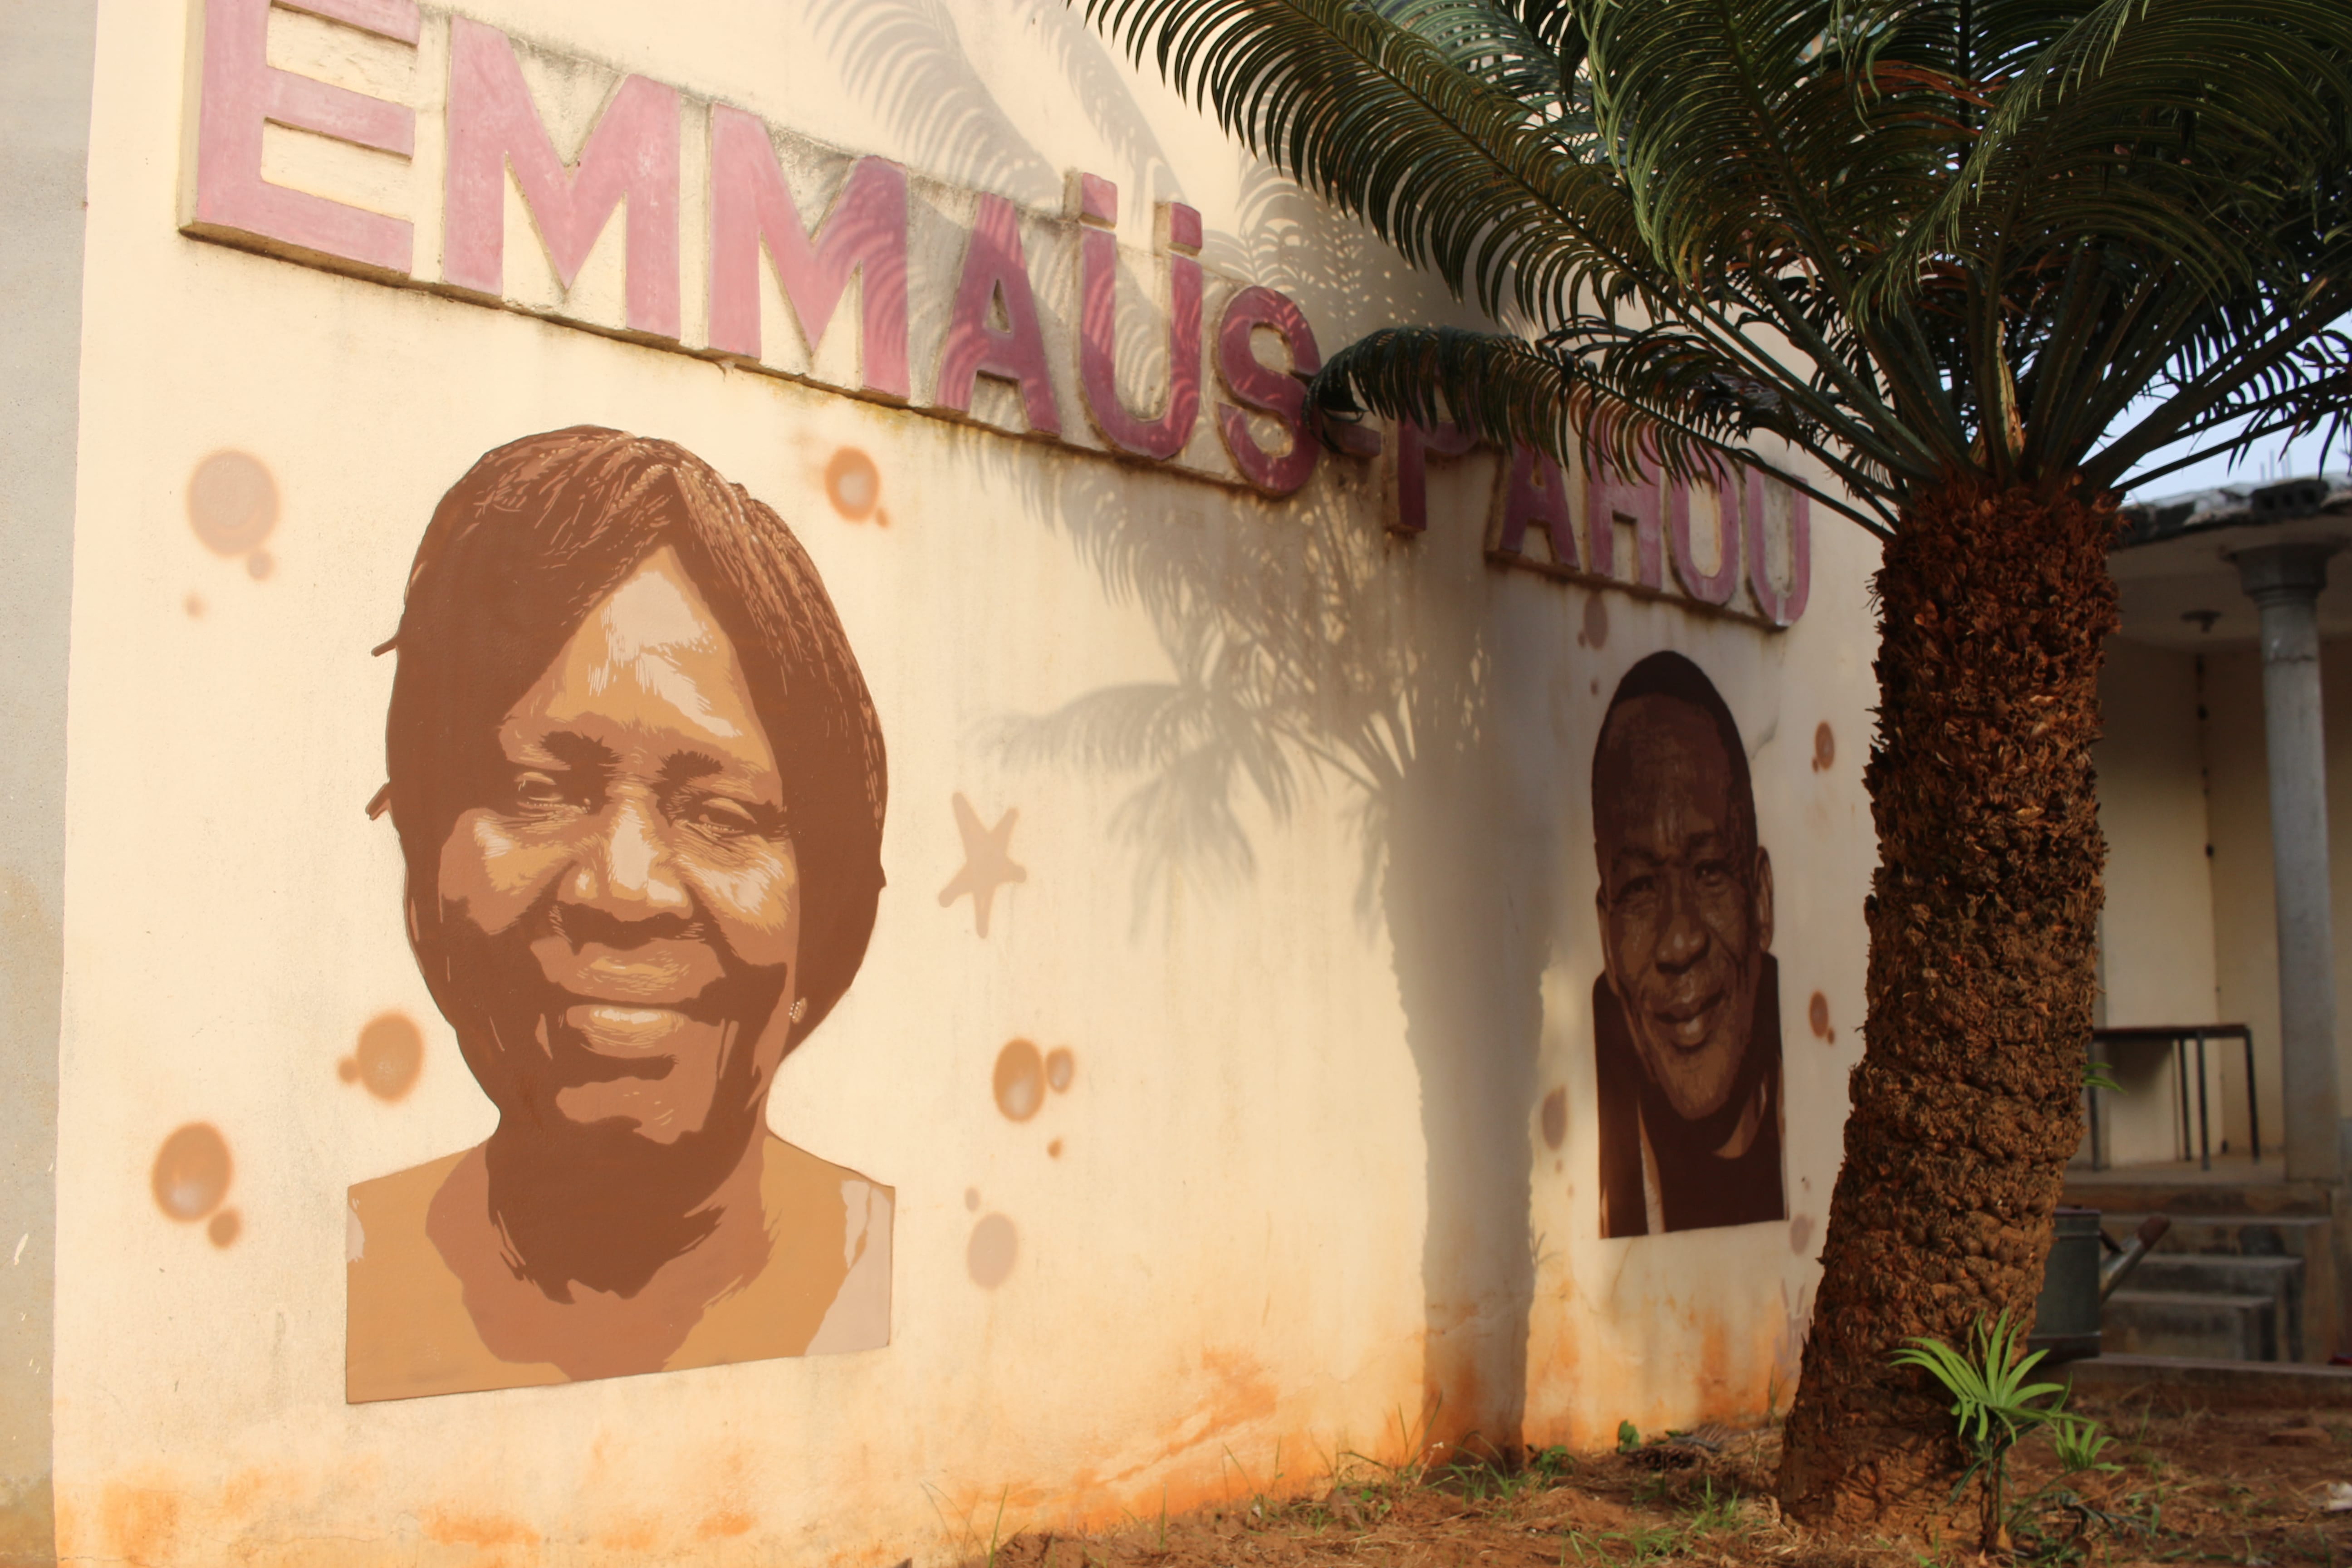 Graffiti 4645 Emmaüs de Jinks Kunst capturé par Jinks Kunst à Godomey Benin